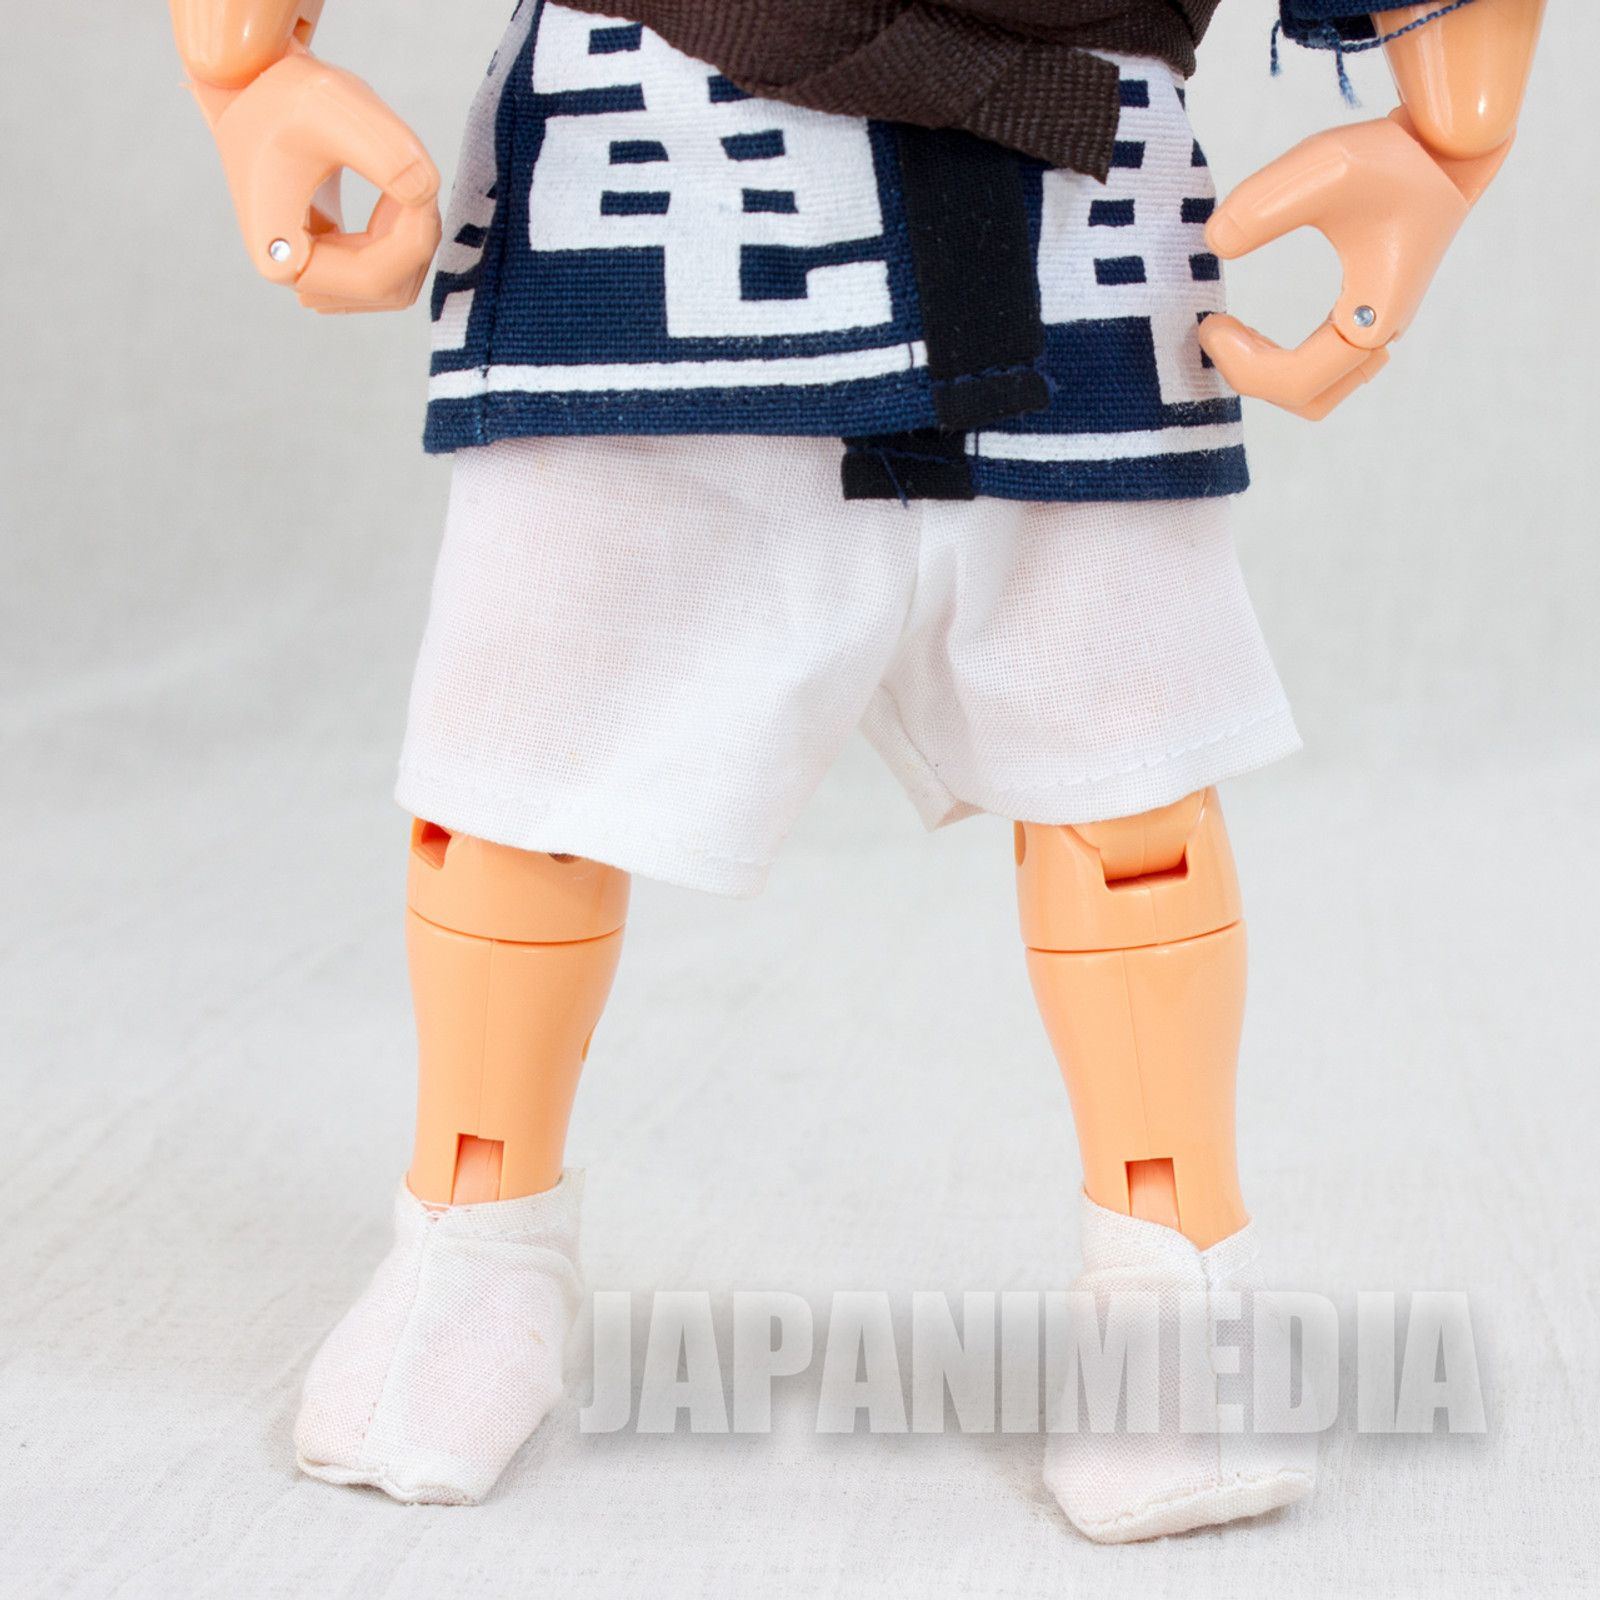 KochiKame Kankichi Ryotsu Action Figure Doll Matsuri Ver. BANDAI JAPAN ANIME